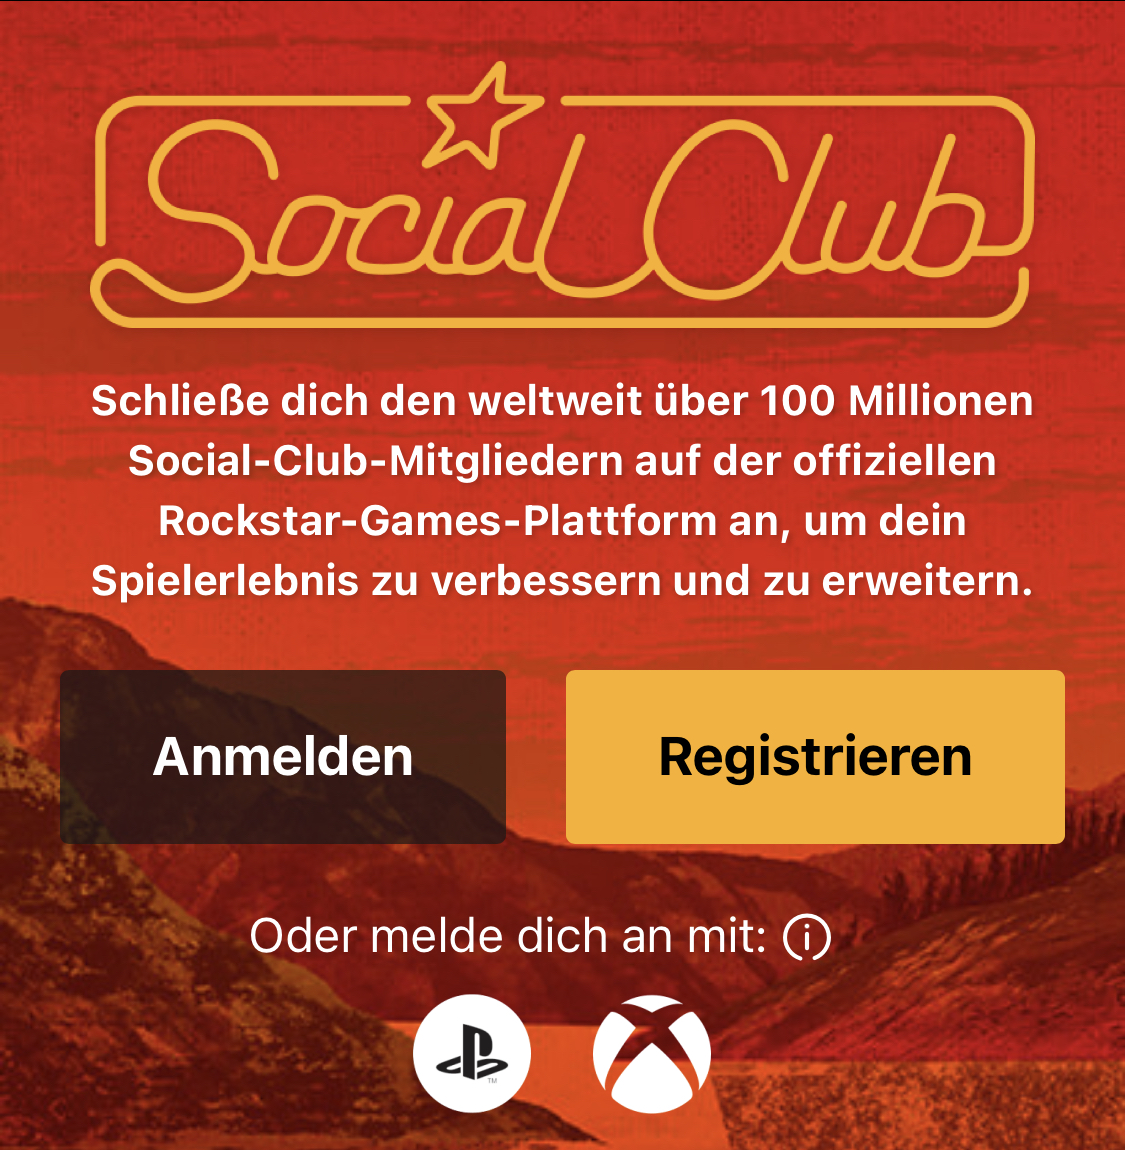 Registrieren oder Anmelden beim Rockstar SocialClub